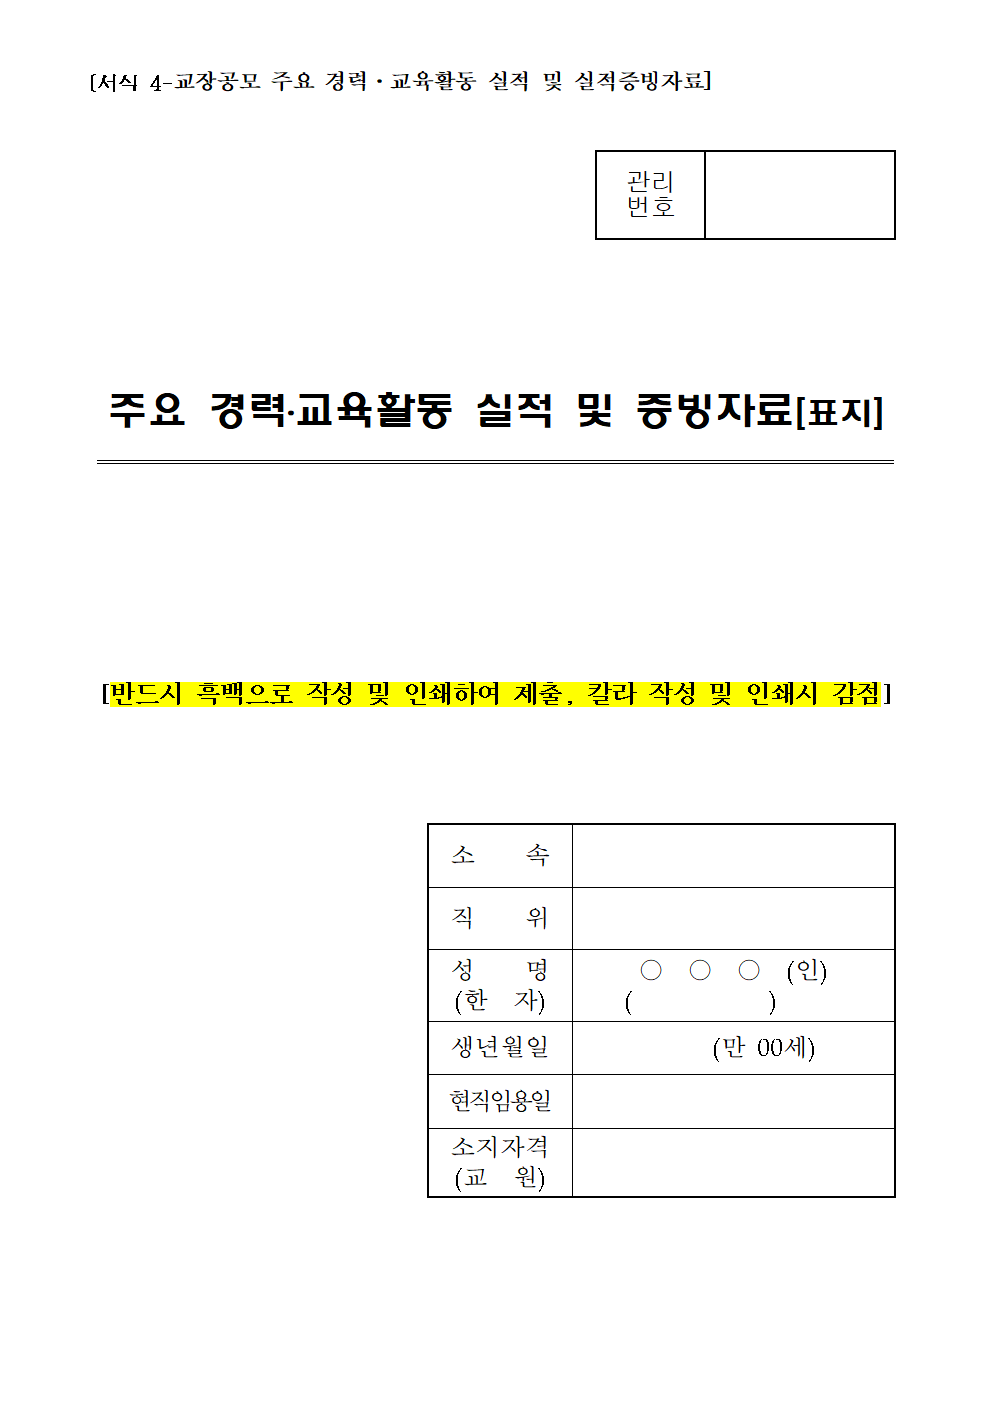 괴산증평송면초등학교교장공모공고(1)011